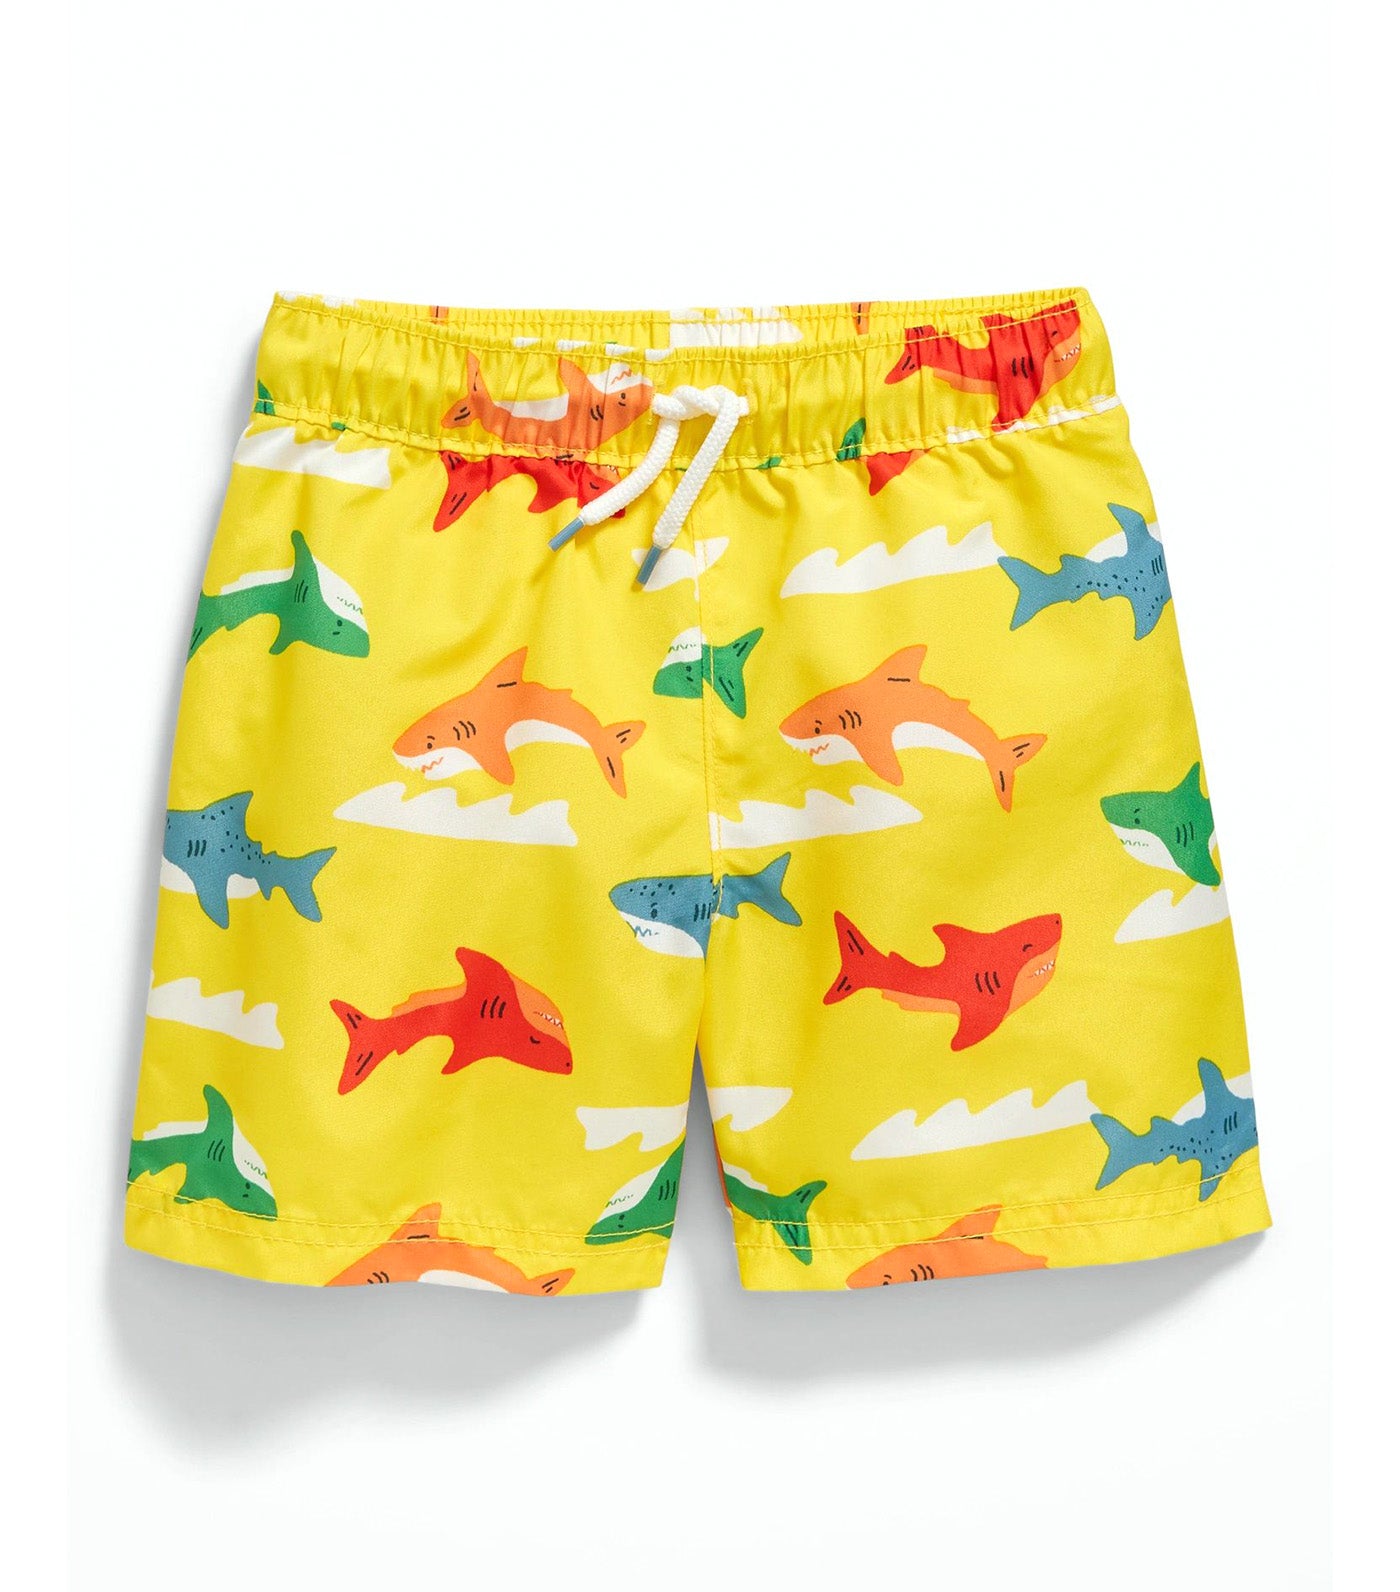 Printed Swim Trunks for Toddler Boys - Sharks